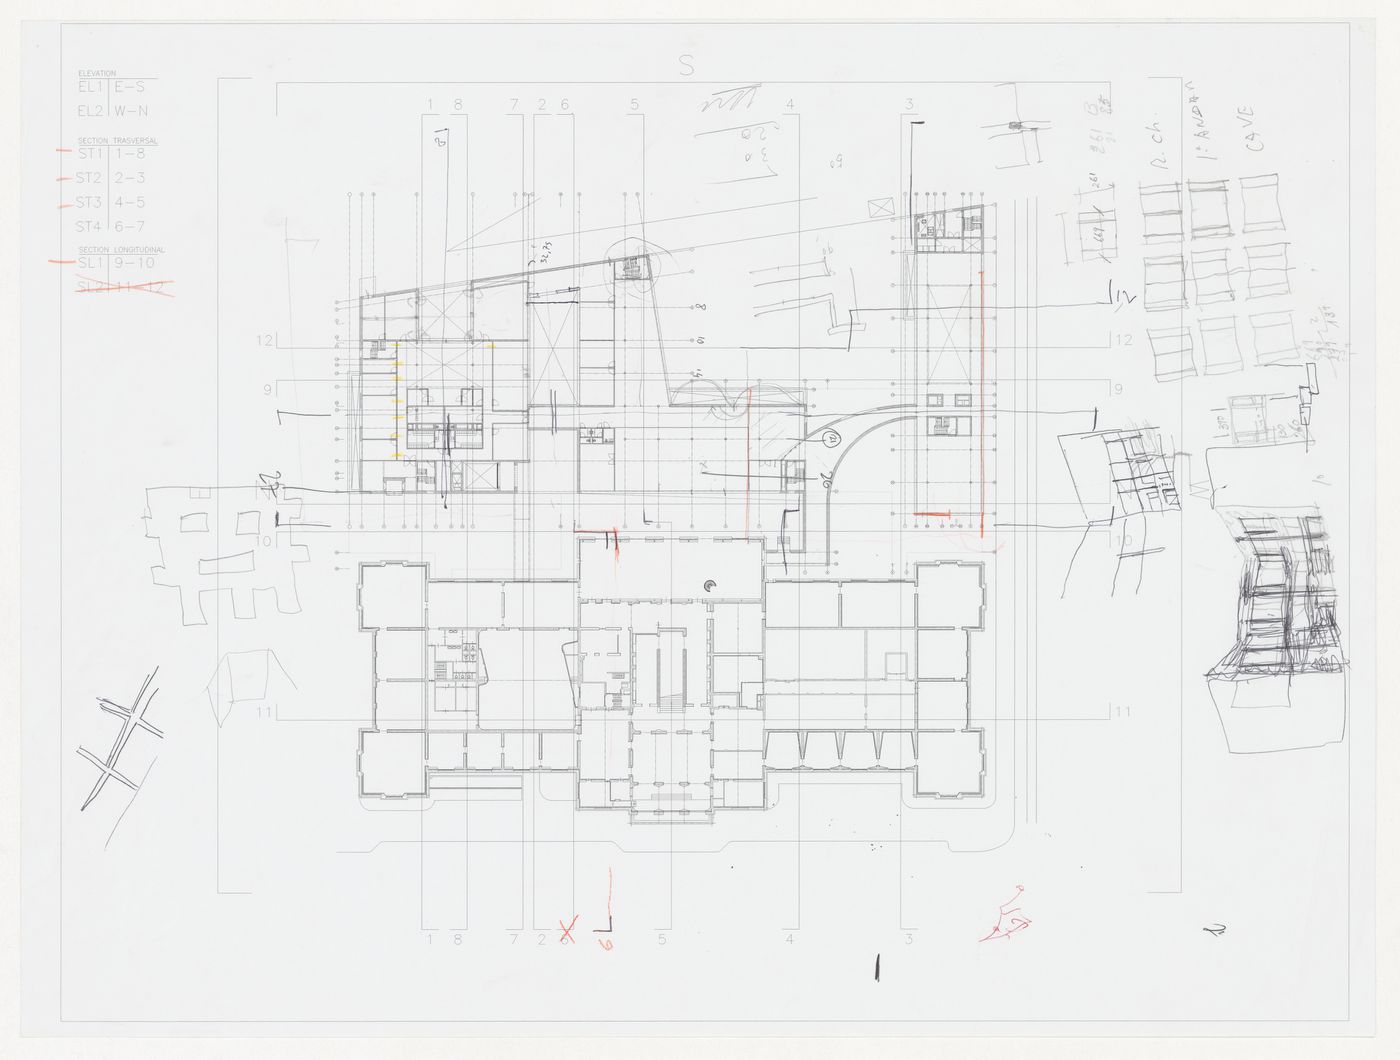 Plan and sketches for Renovação e extensão do Museu Stedelijk [Restoration and extension of Stedelijk Museum], Amsterdam